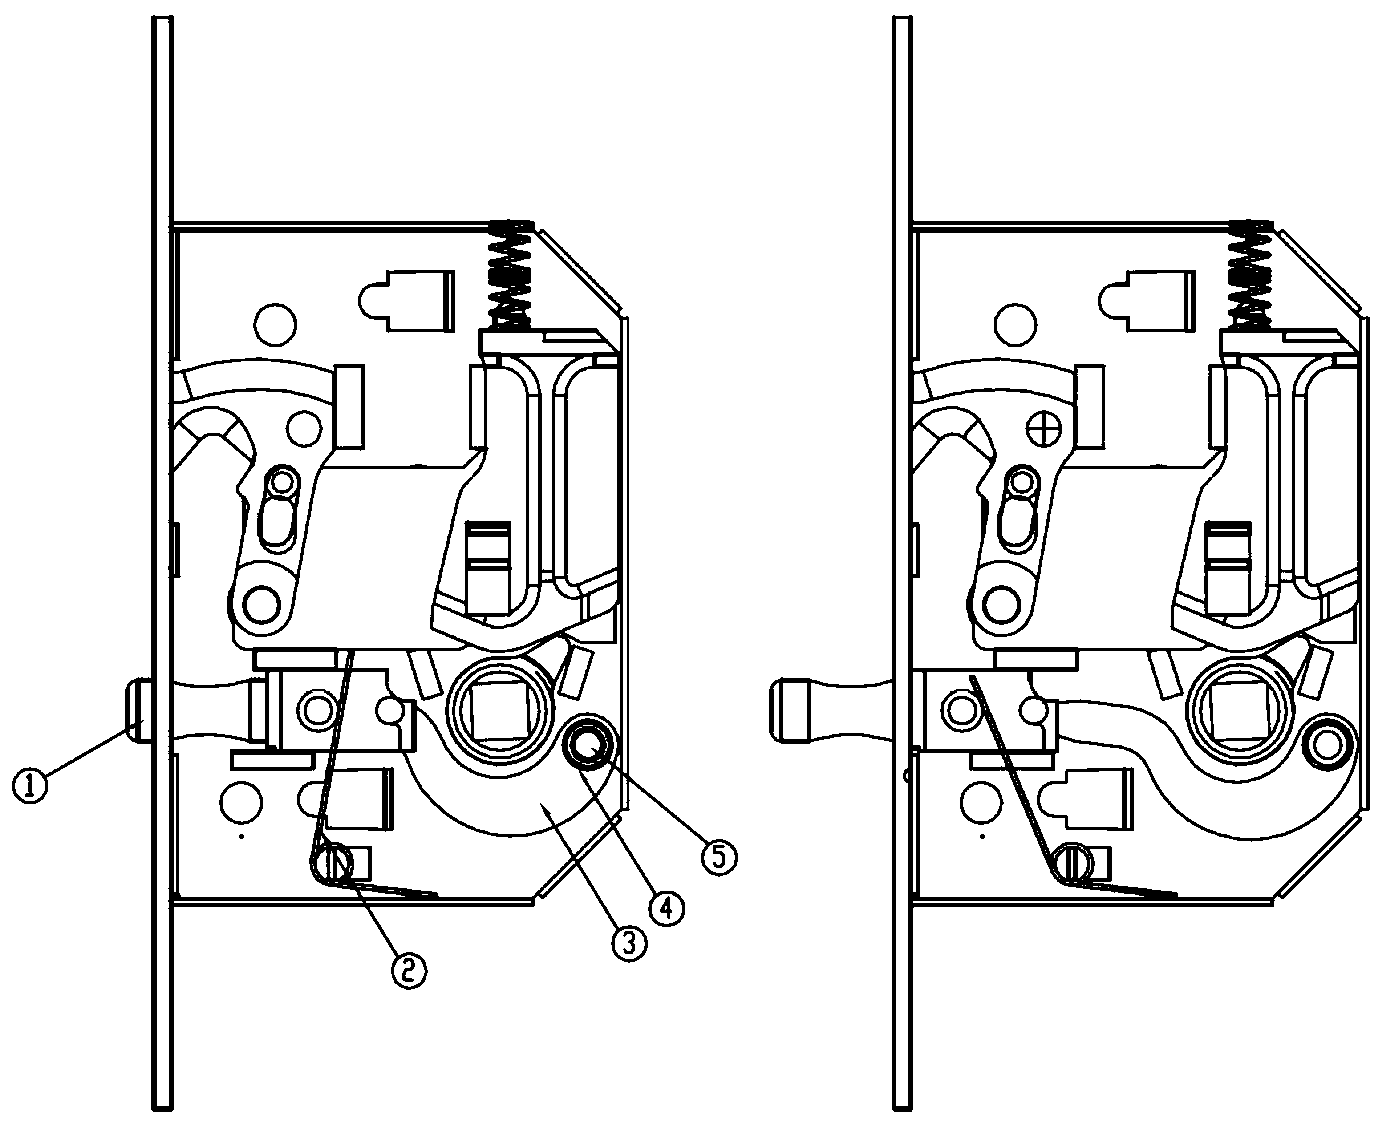 Sliding door lock with handle